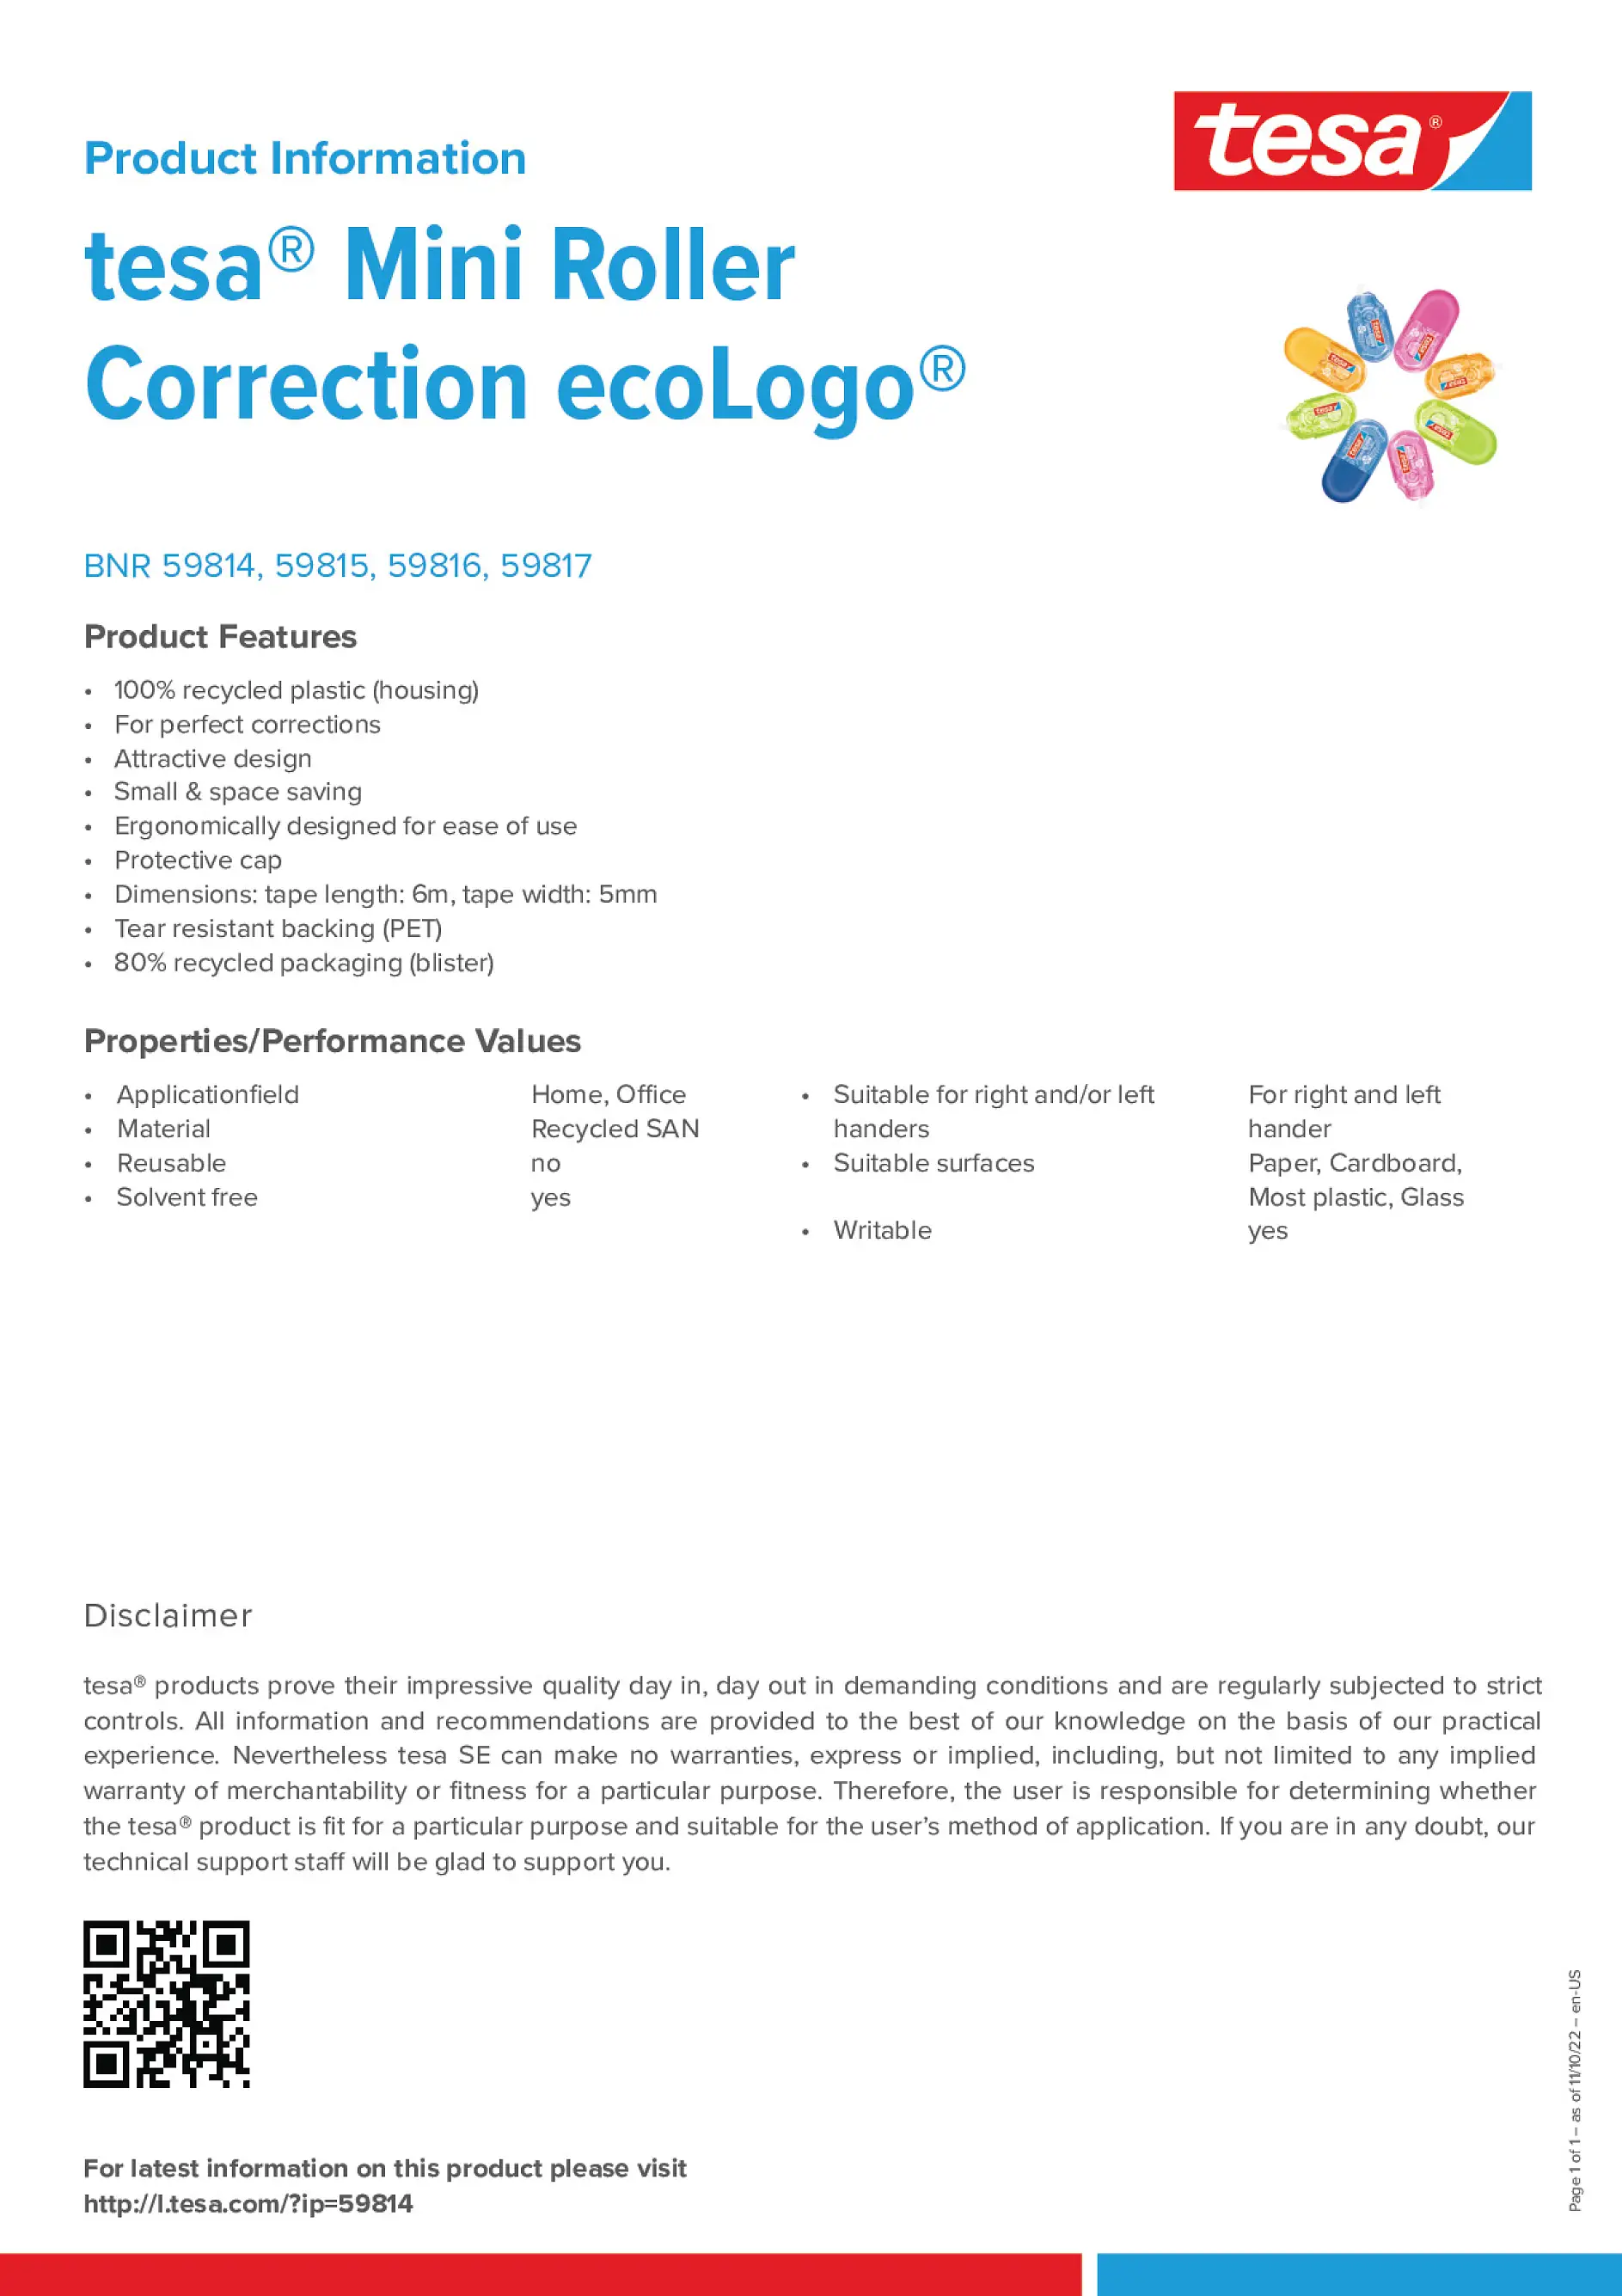 mini-roller-correction-ecologo_en-US